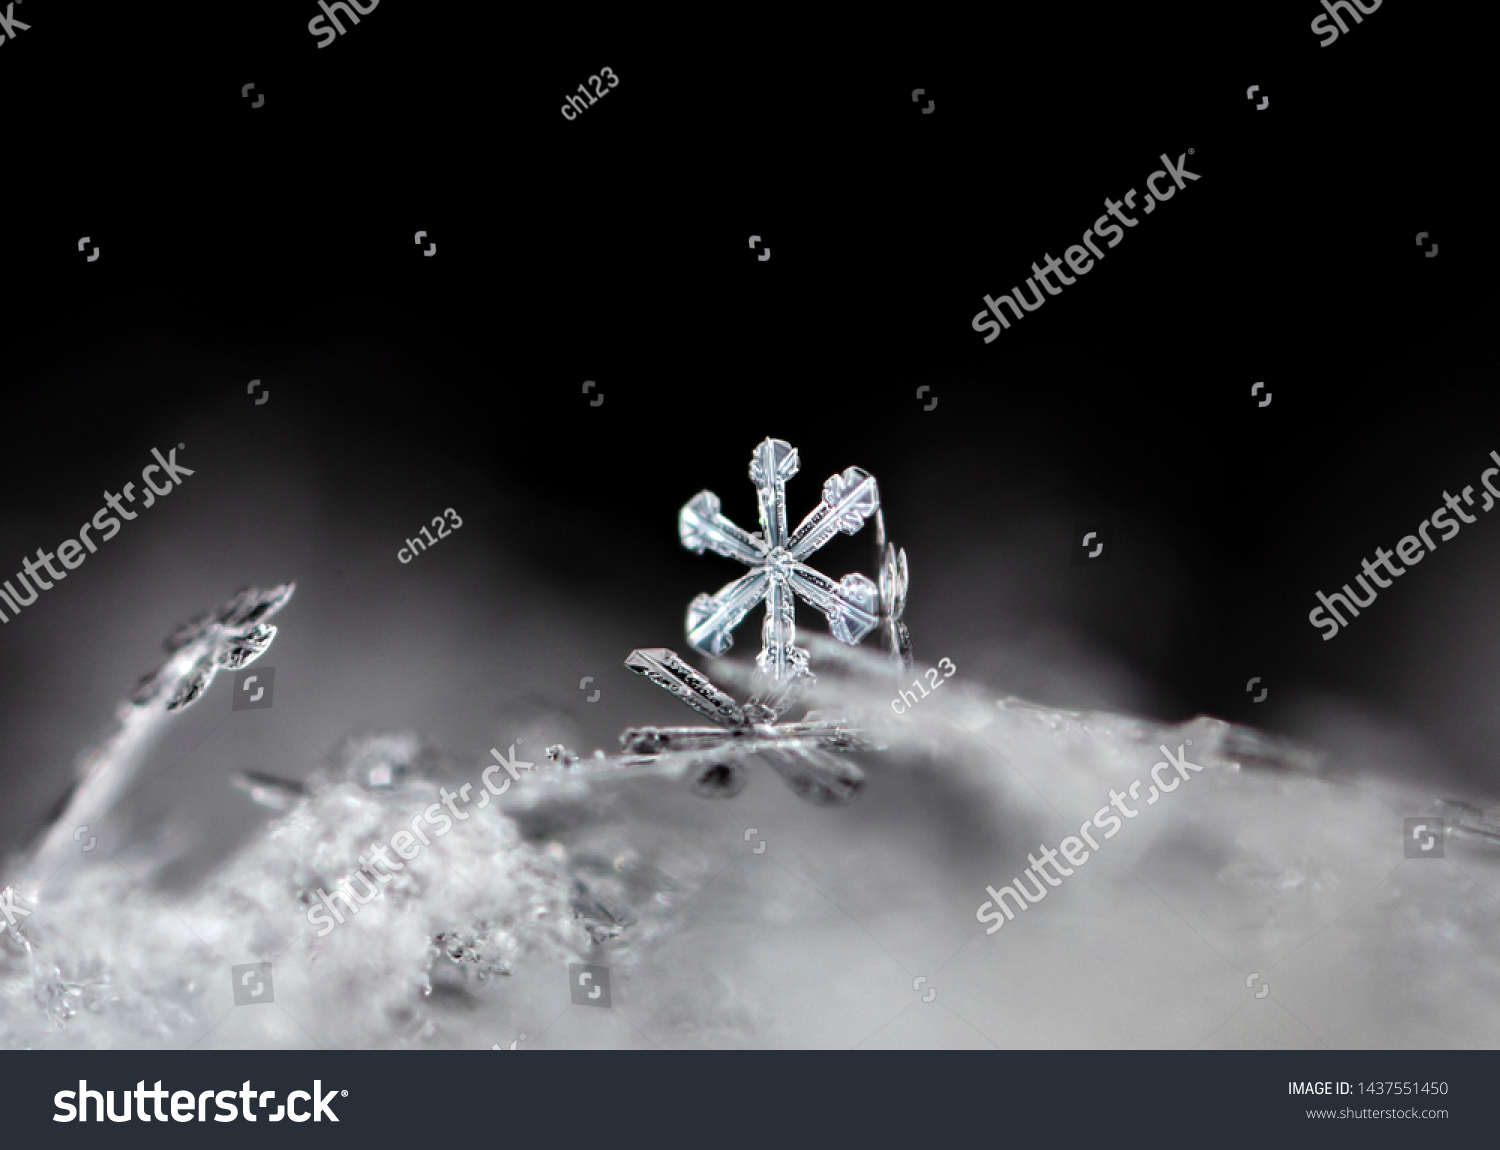 snowflake, little snowflake on the snow #1437551450